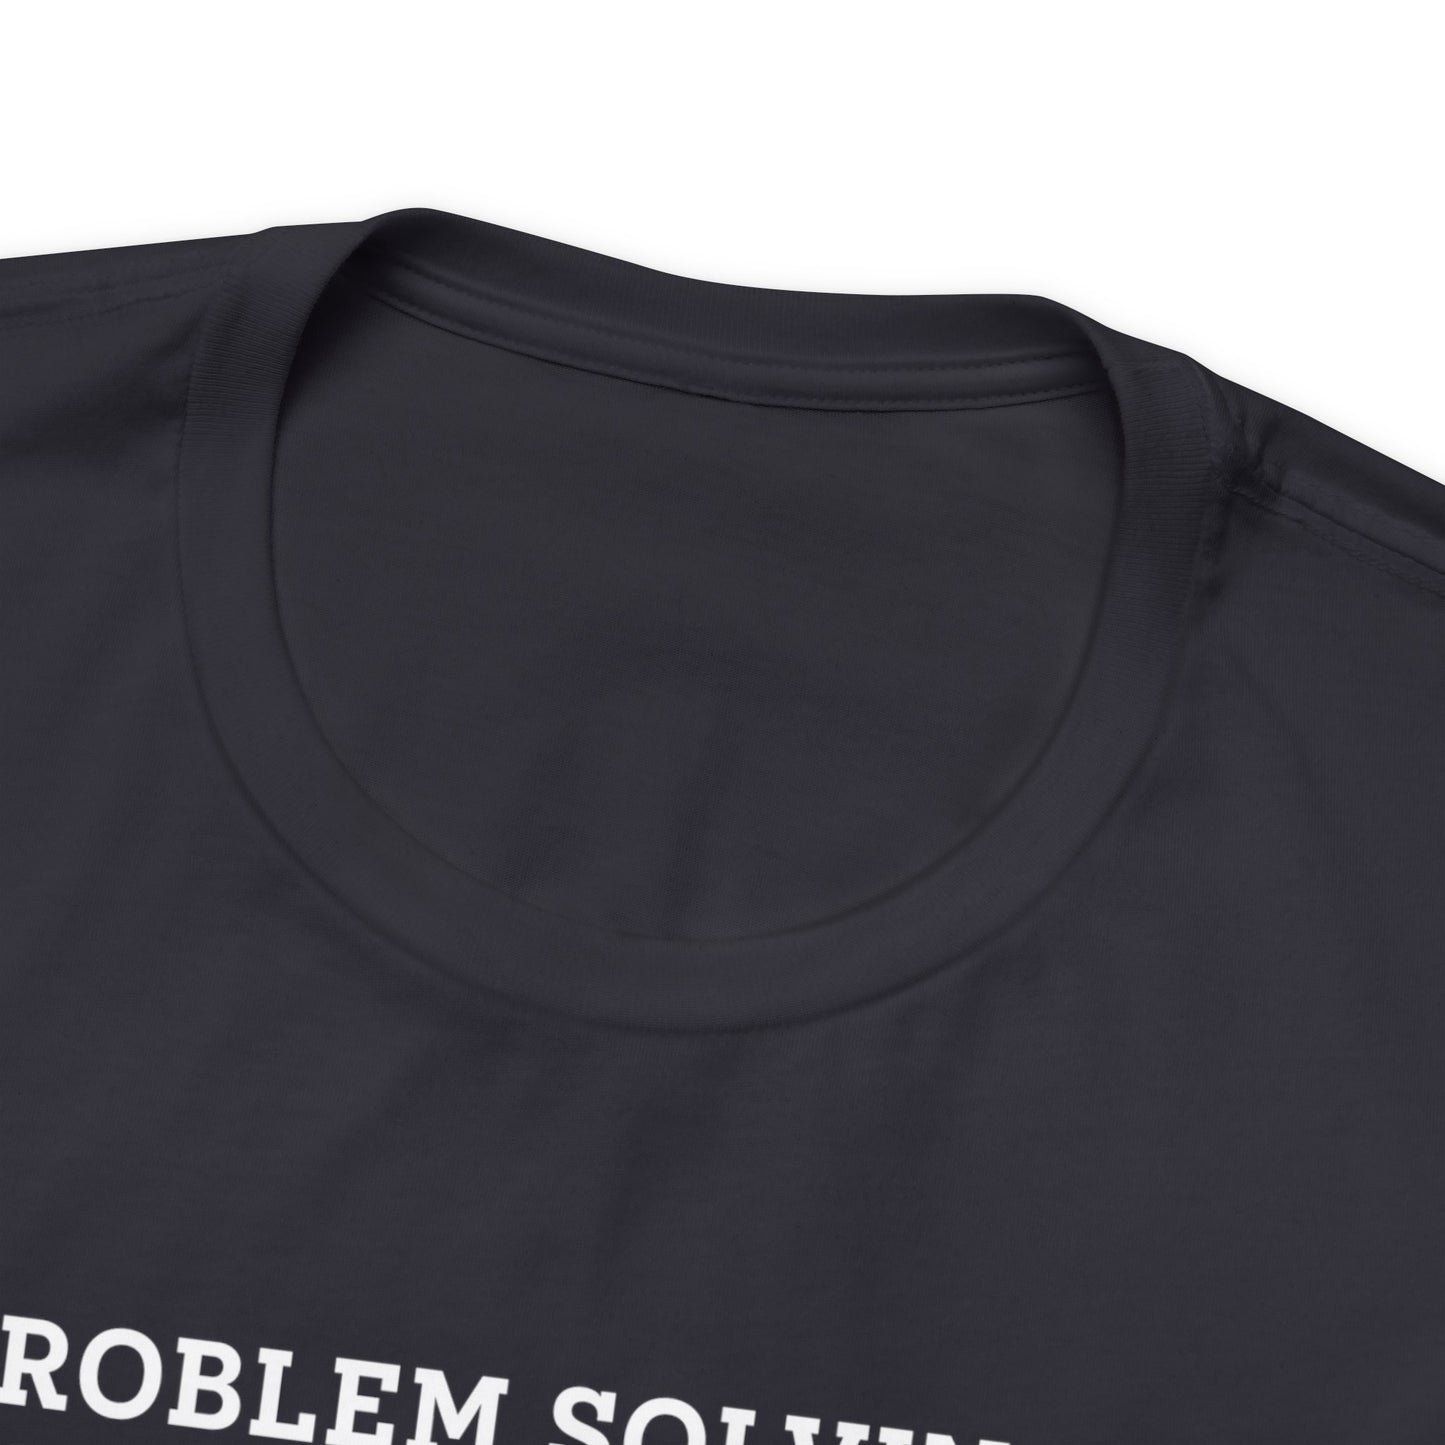 Problem  Solving  hunting  T-Shirt